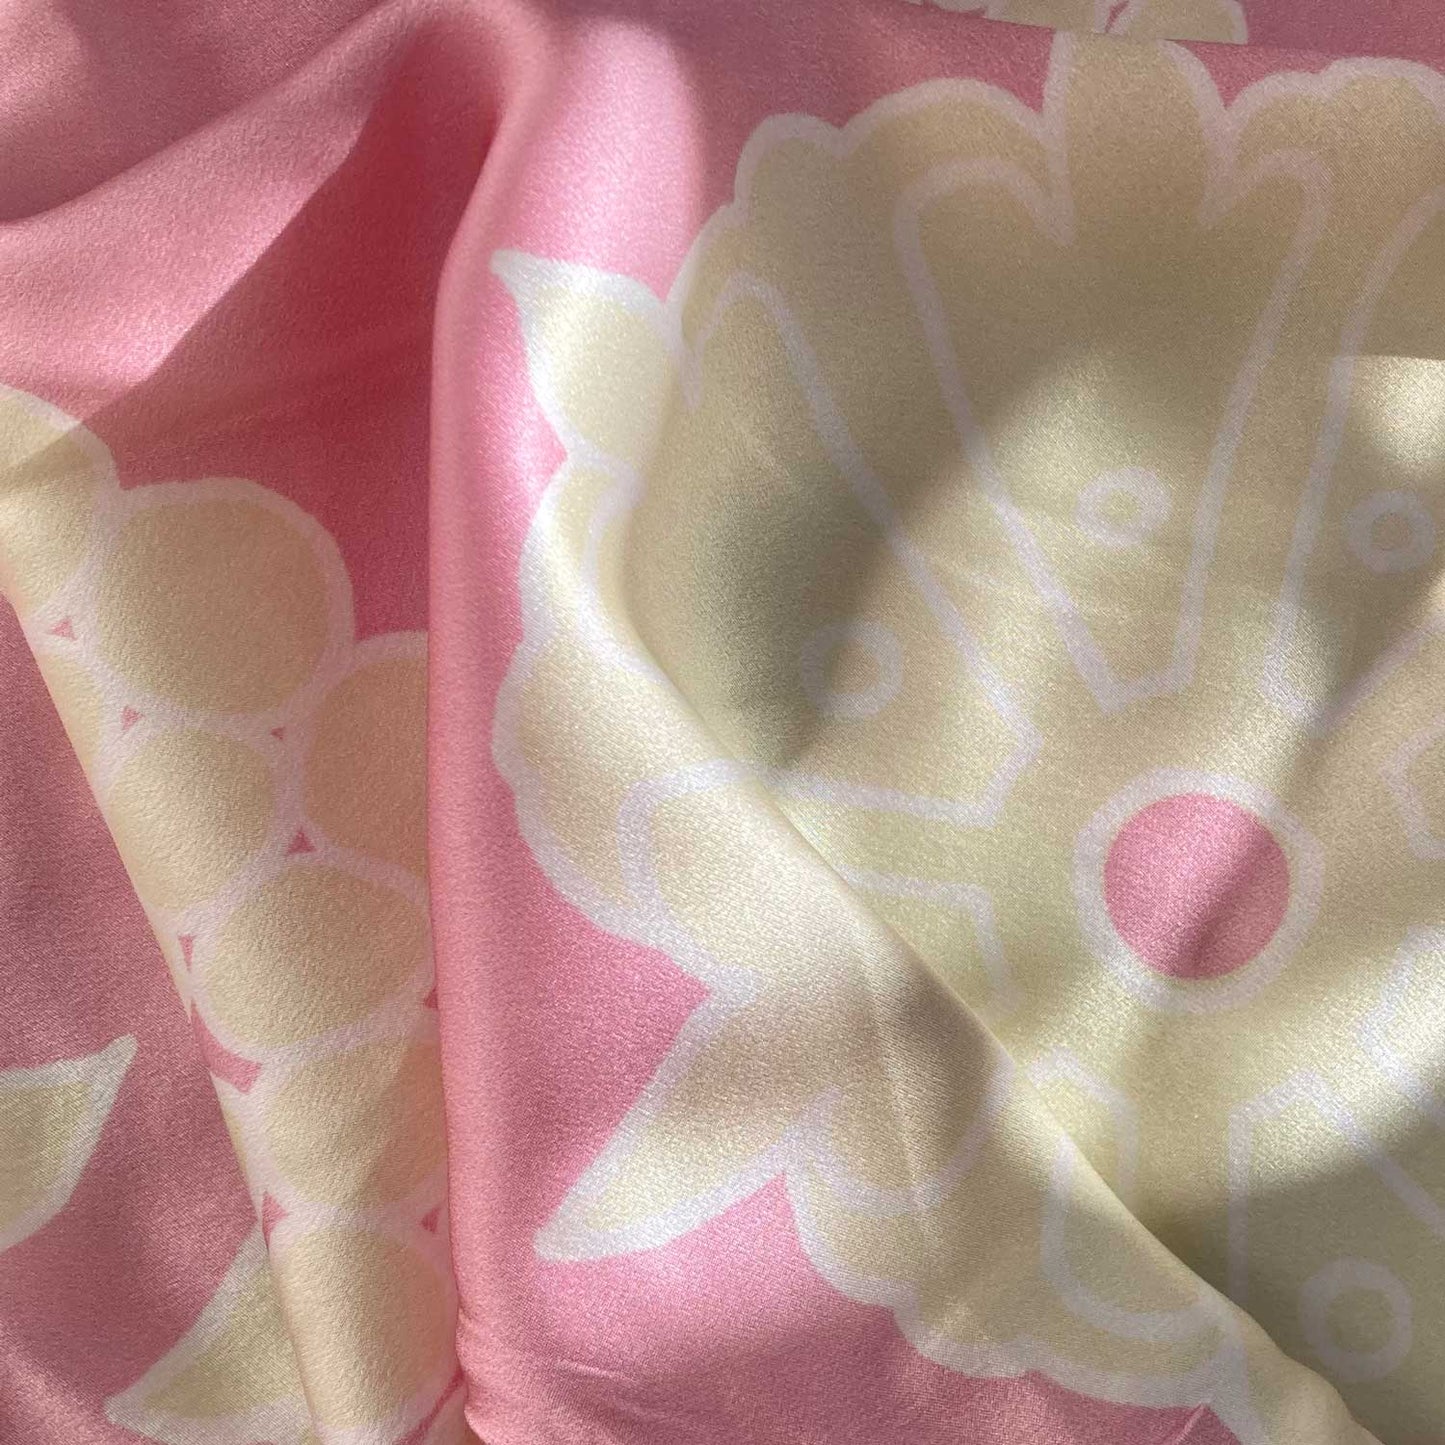 Kimono Silk Robe - Pink With Cream Floral Design